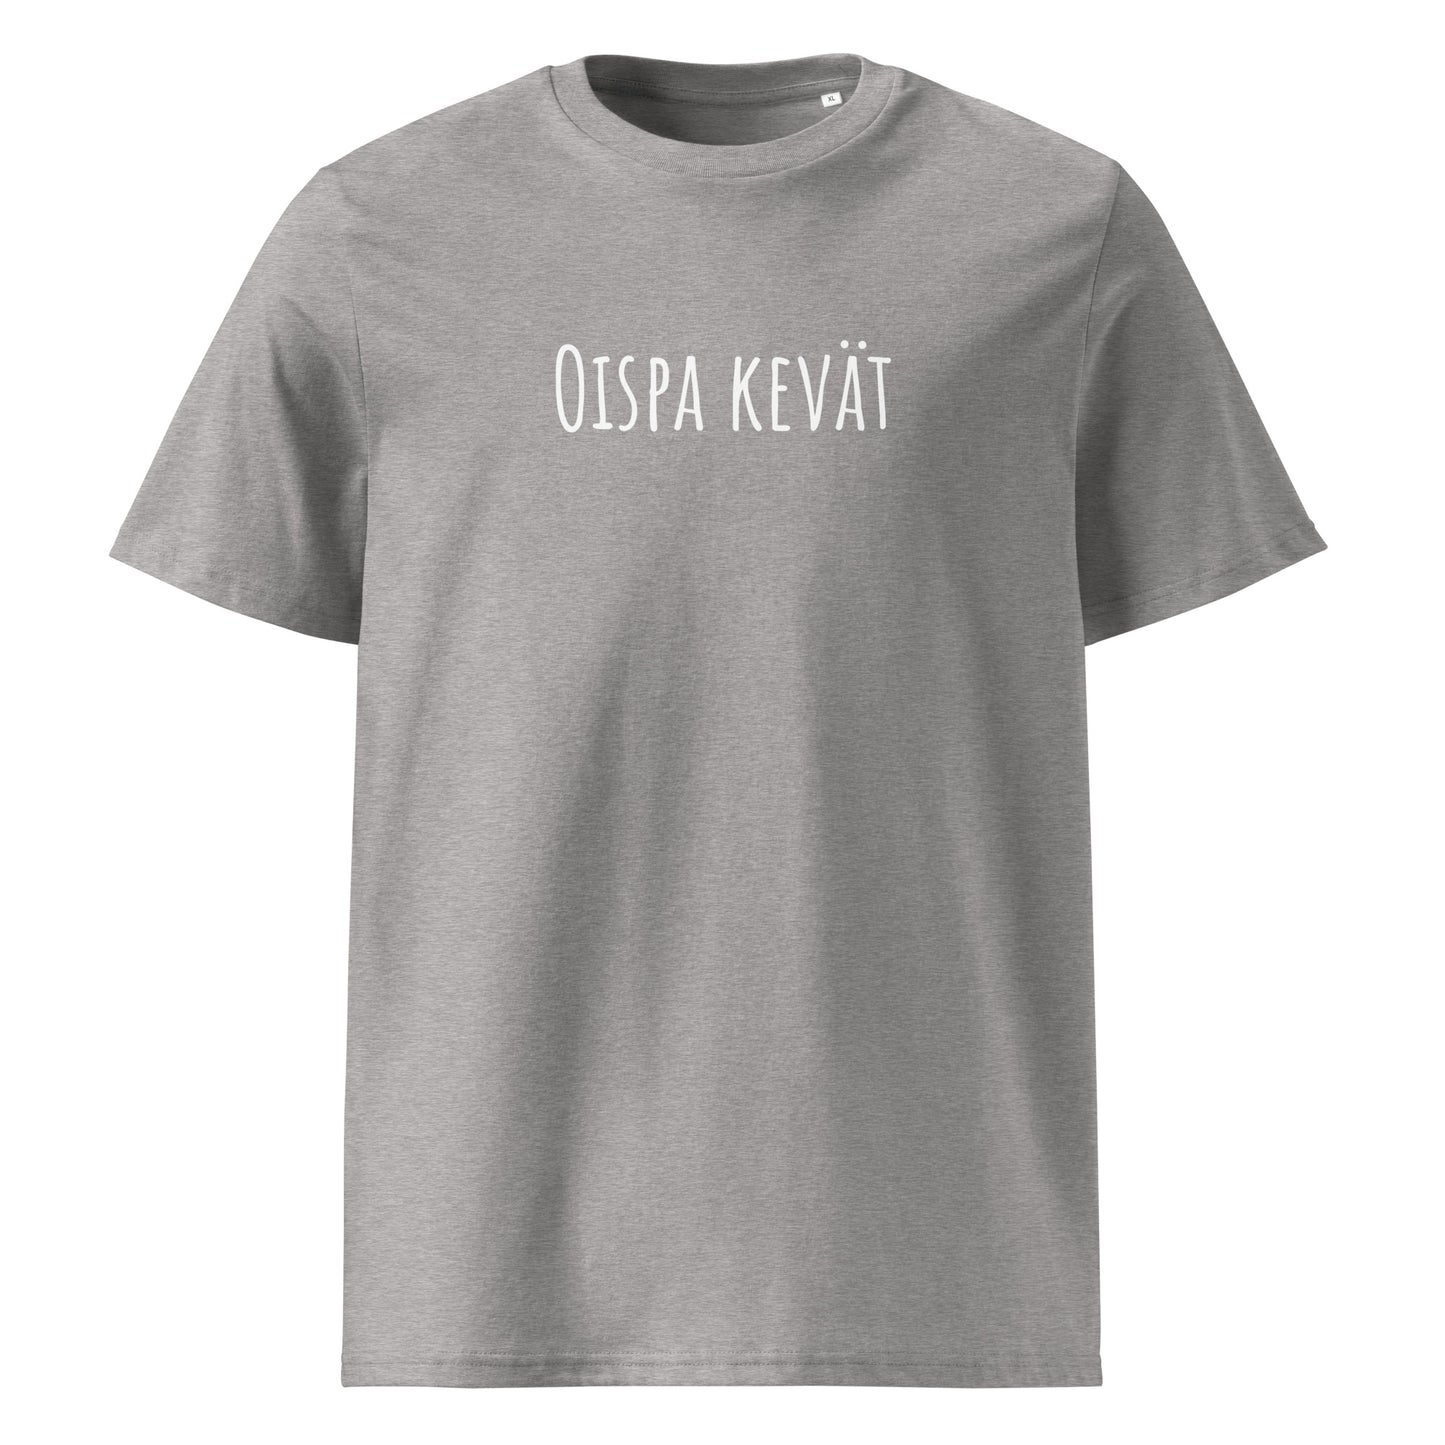 Oispa kevät - Unisex organic cotton t-shirt